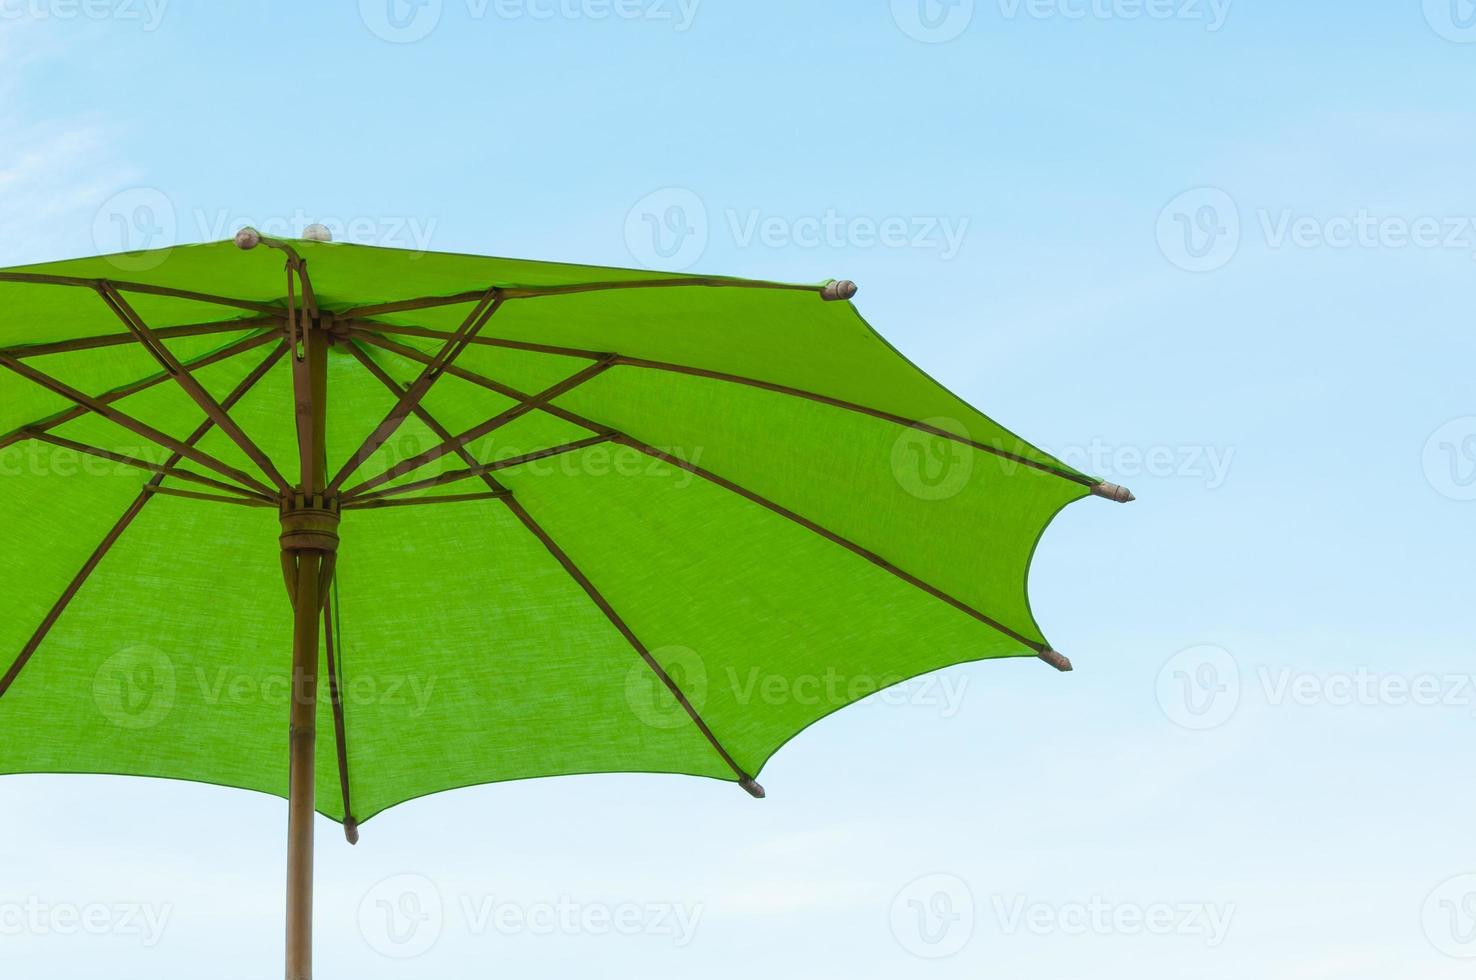 traditionell asiatisch Papier und Bambus Regenschirm mit ein gerundet Griff auf blauer Himmel foto